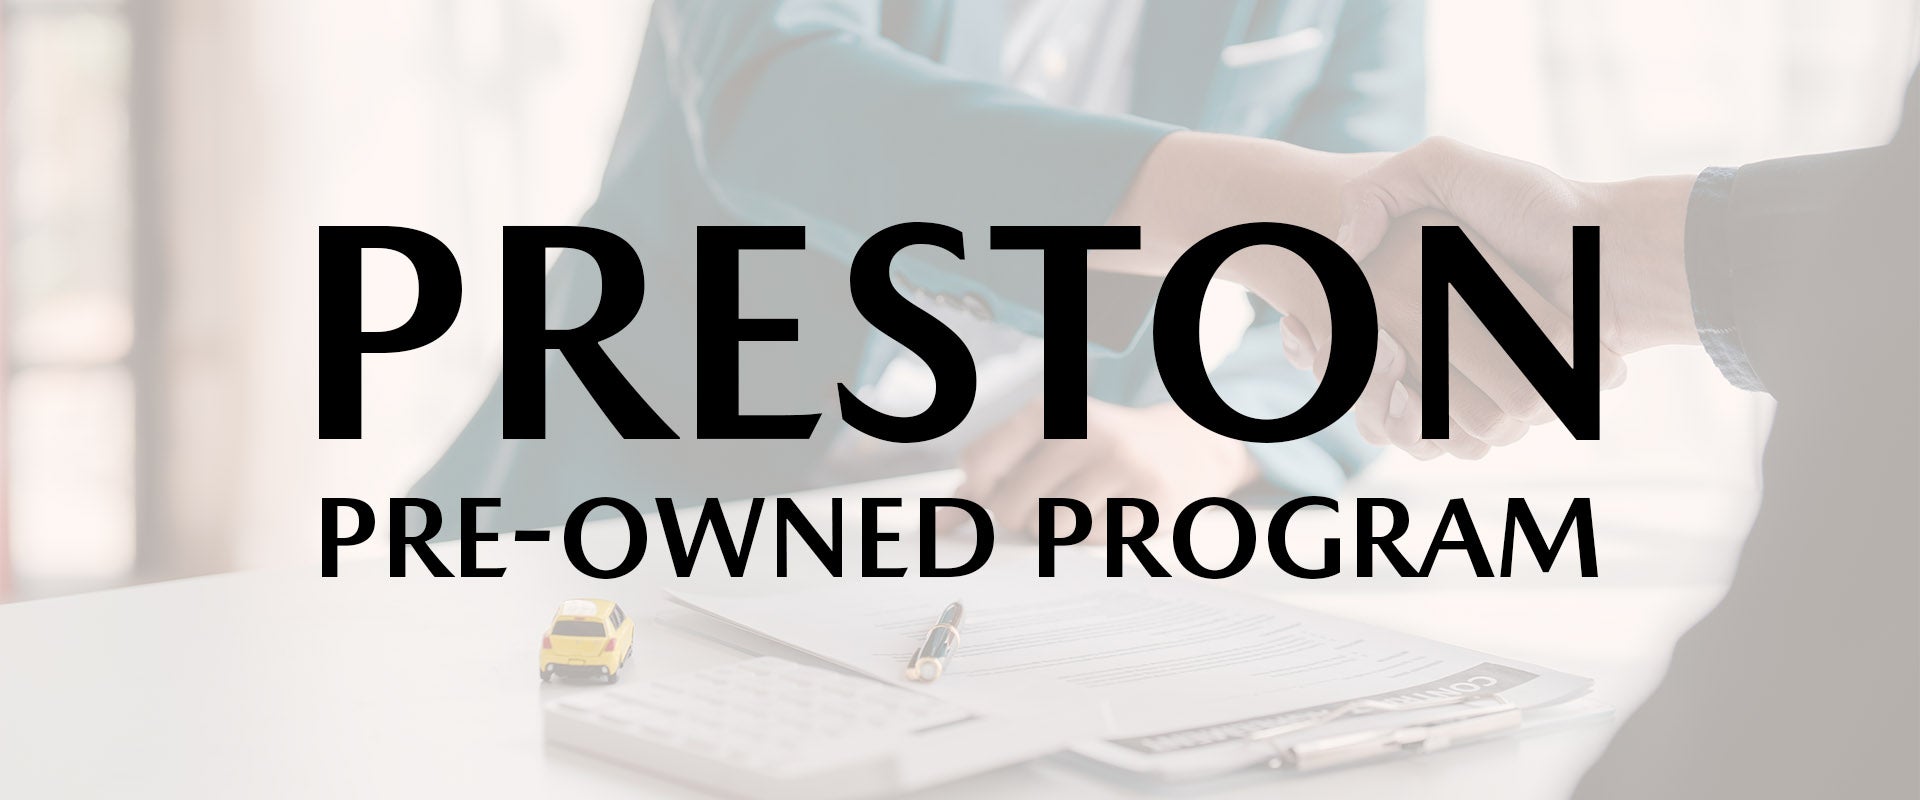 Preston Pre-Owned Program